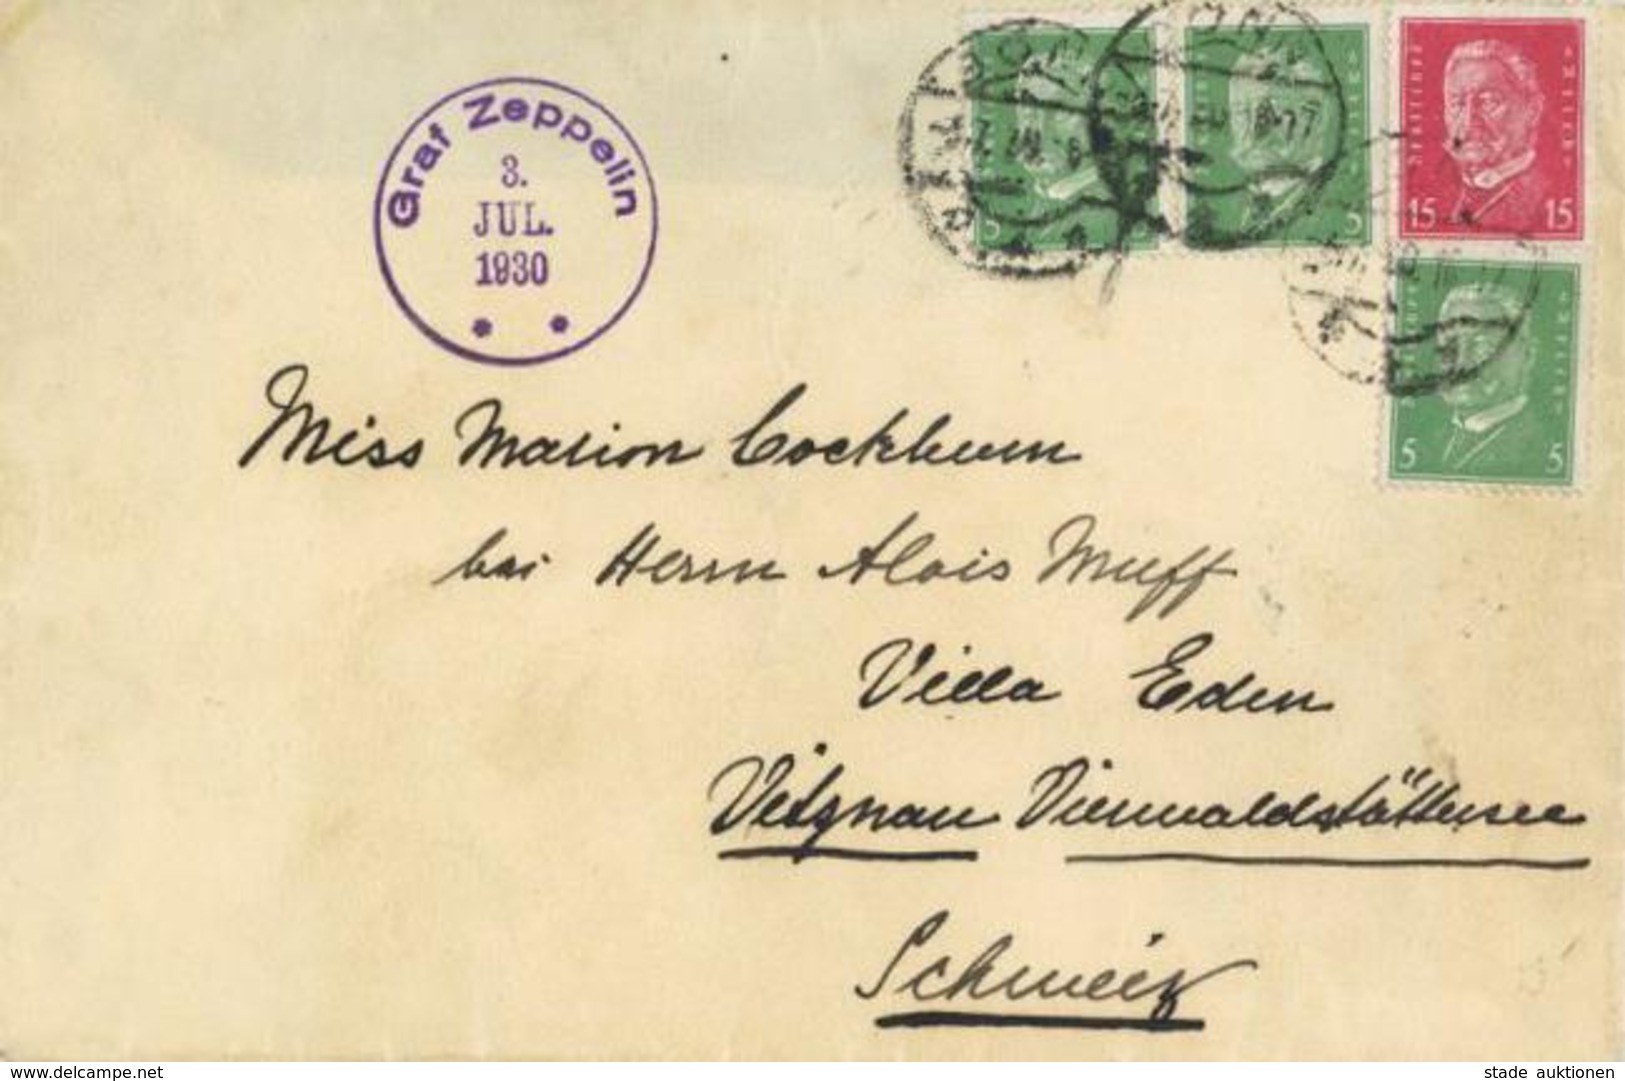 ZEPPELINPOST Sieger 71?  - Zeppelinbrief Mit Privat-o Graf Zeppelin 3.7.1930", Auflieferung "Bonn 3.7.30" I-II" Dirigeab - Dirigeables